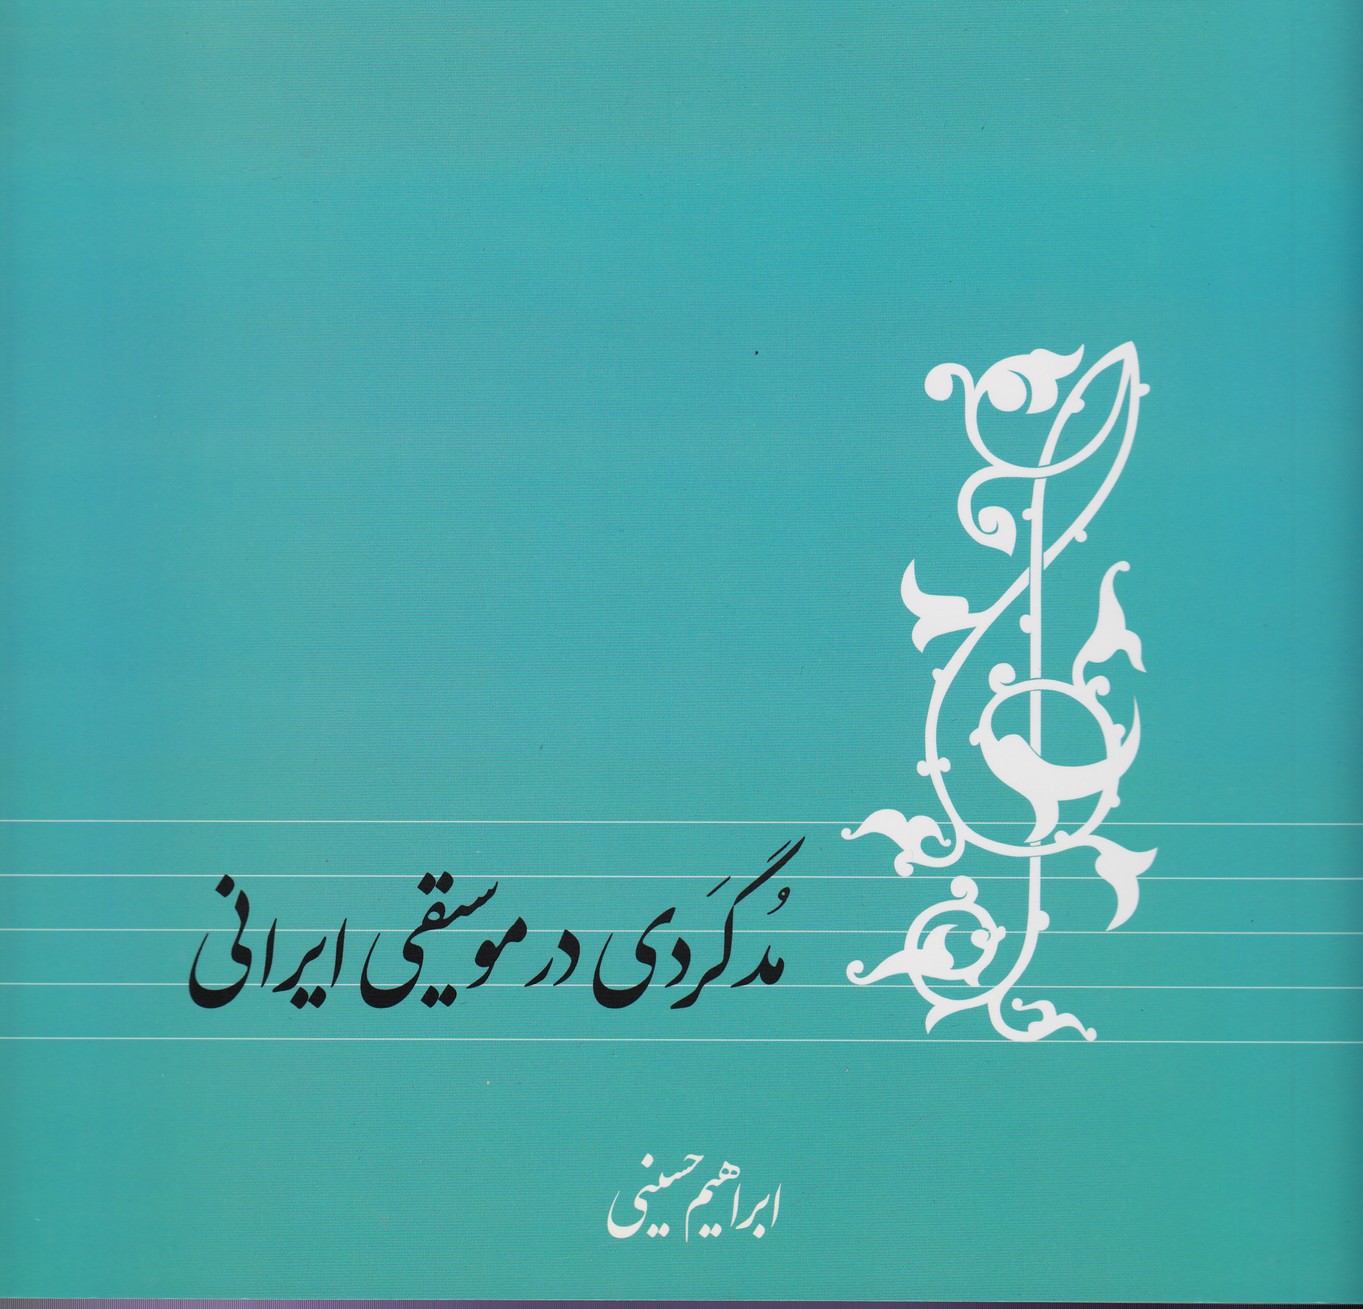 مد گردی در موسیقی ایرانی